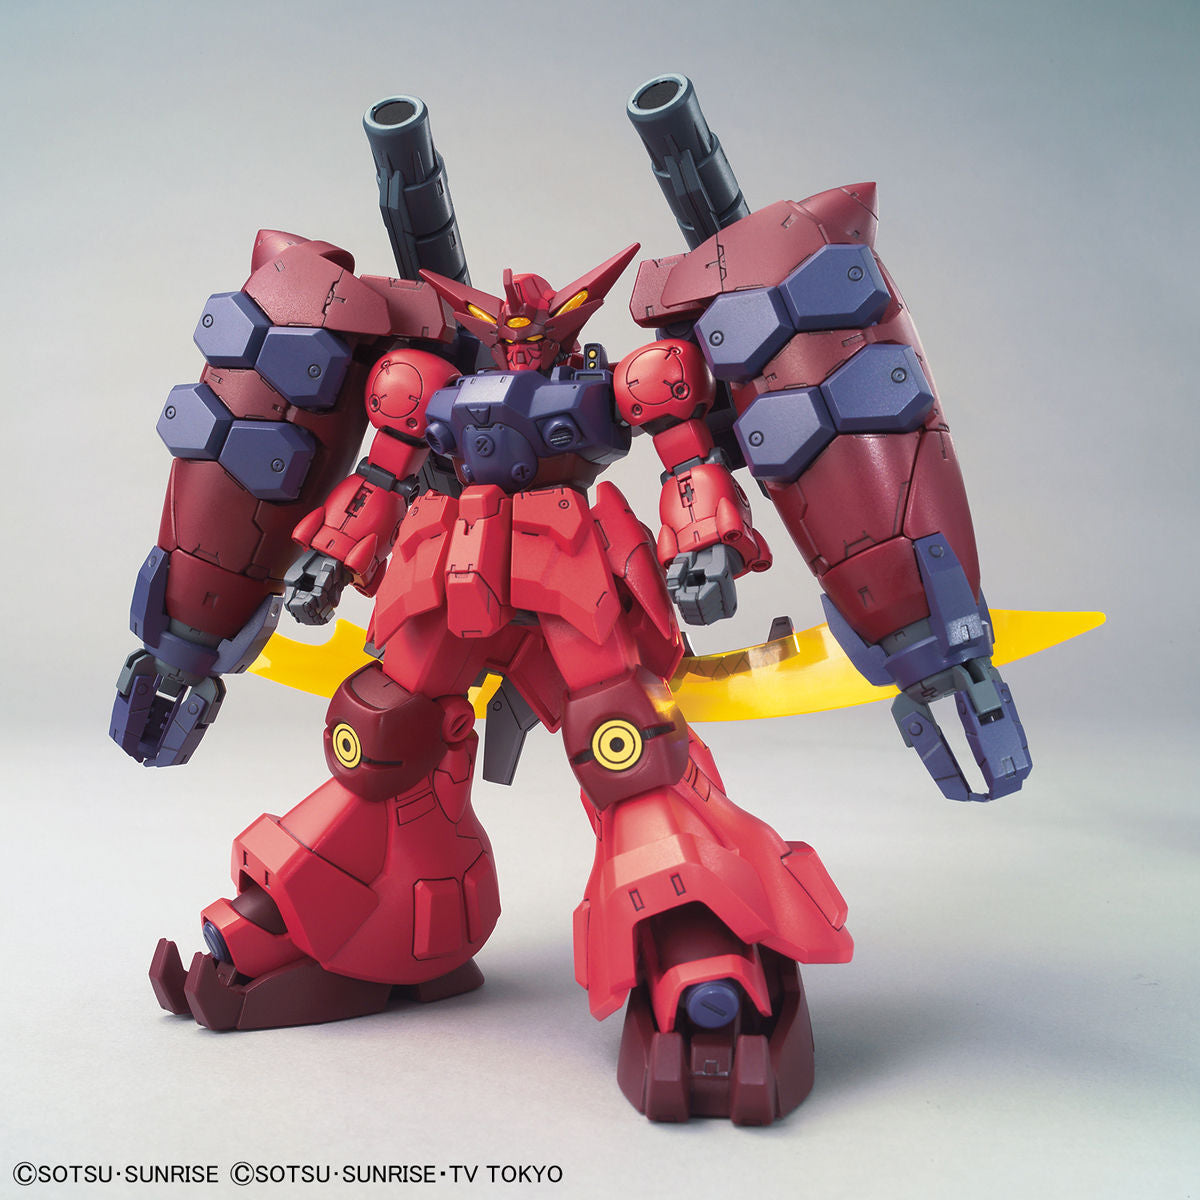 Bandai HGBD:R 1/144 Gundam GP-Rase-Two-Ten